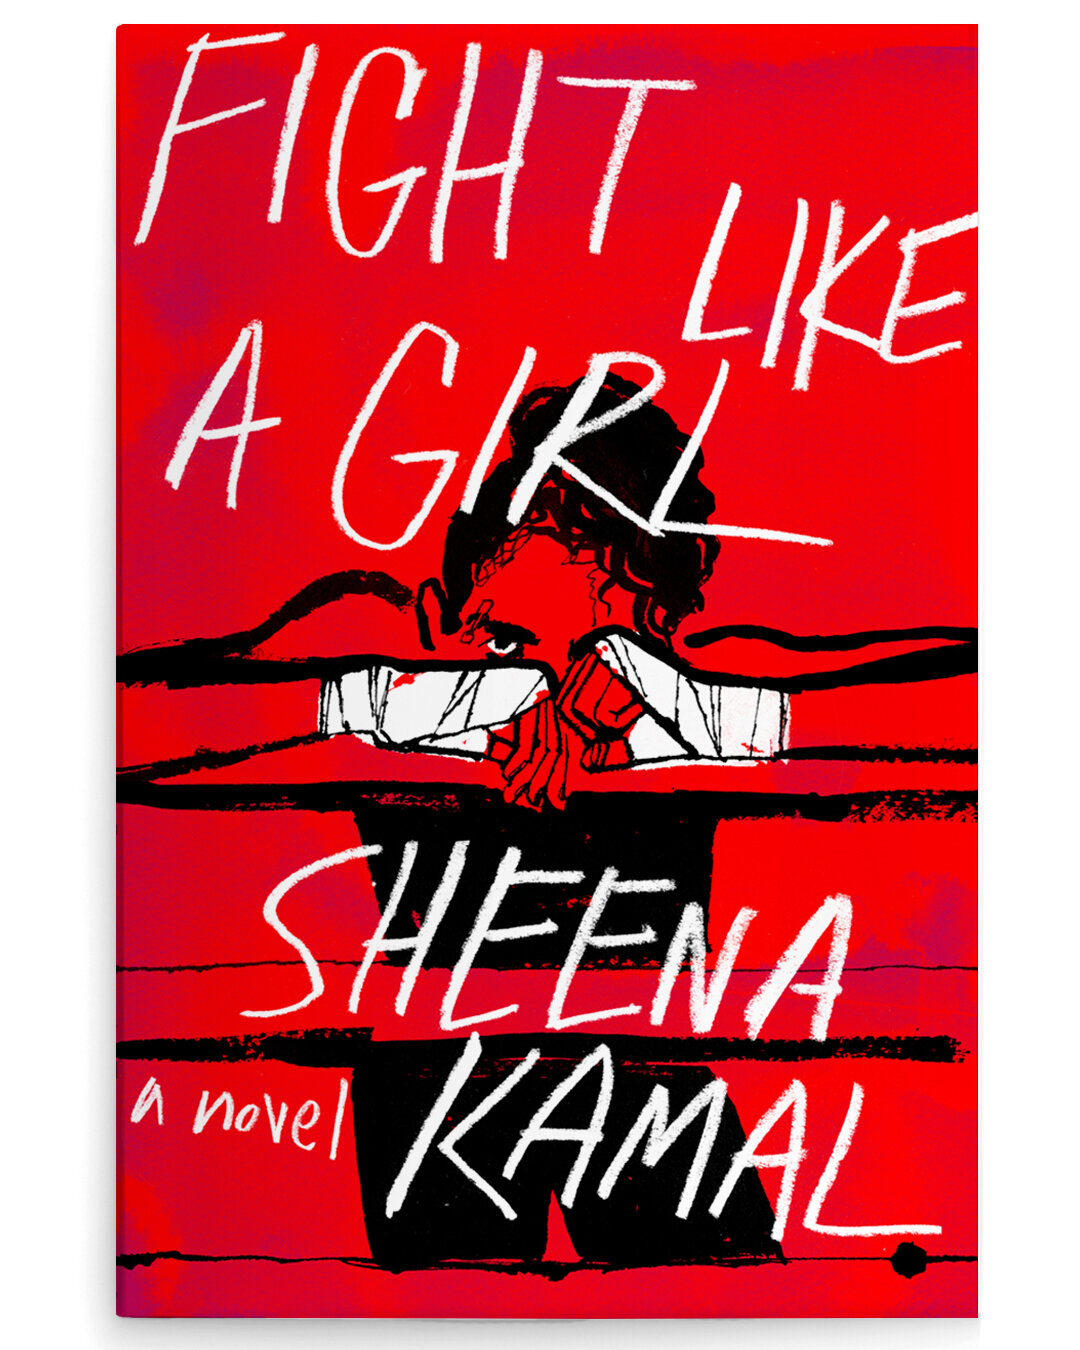 Fight Like a Girl by Sheena Kamal